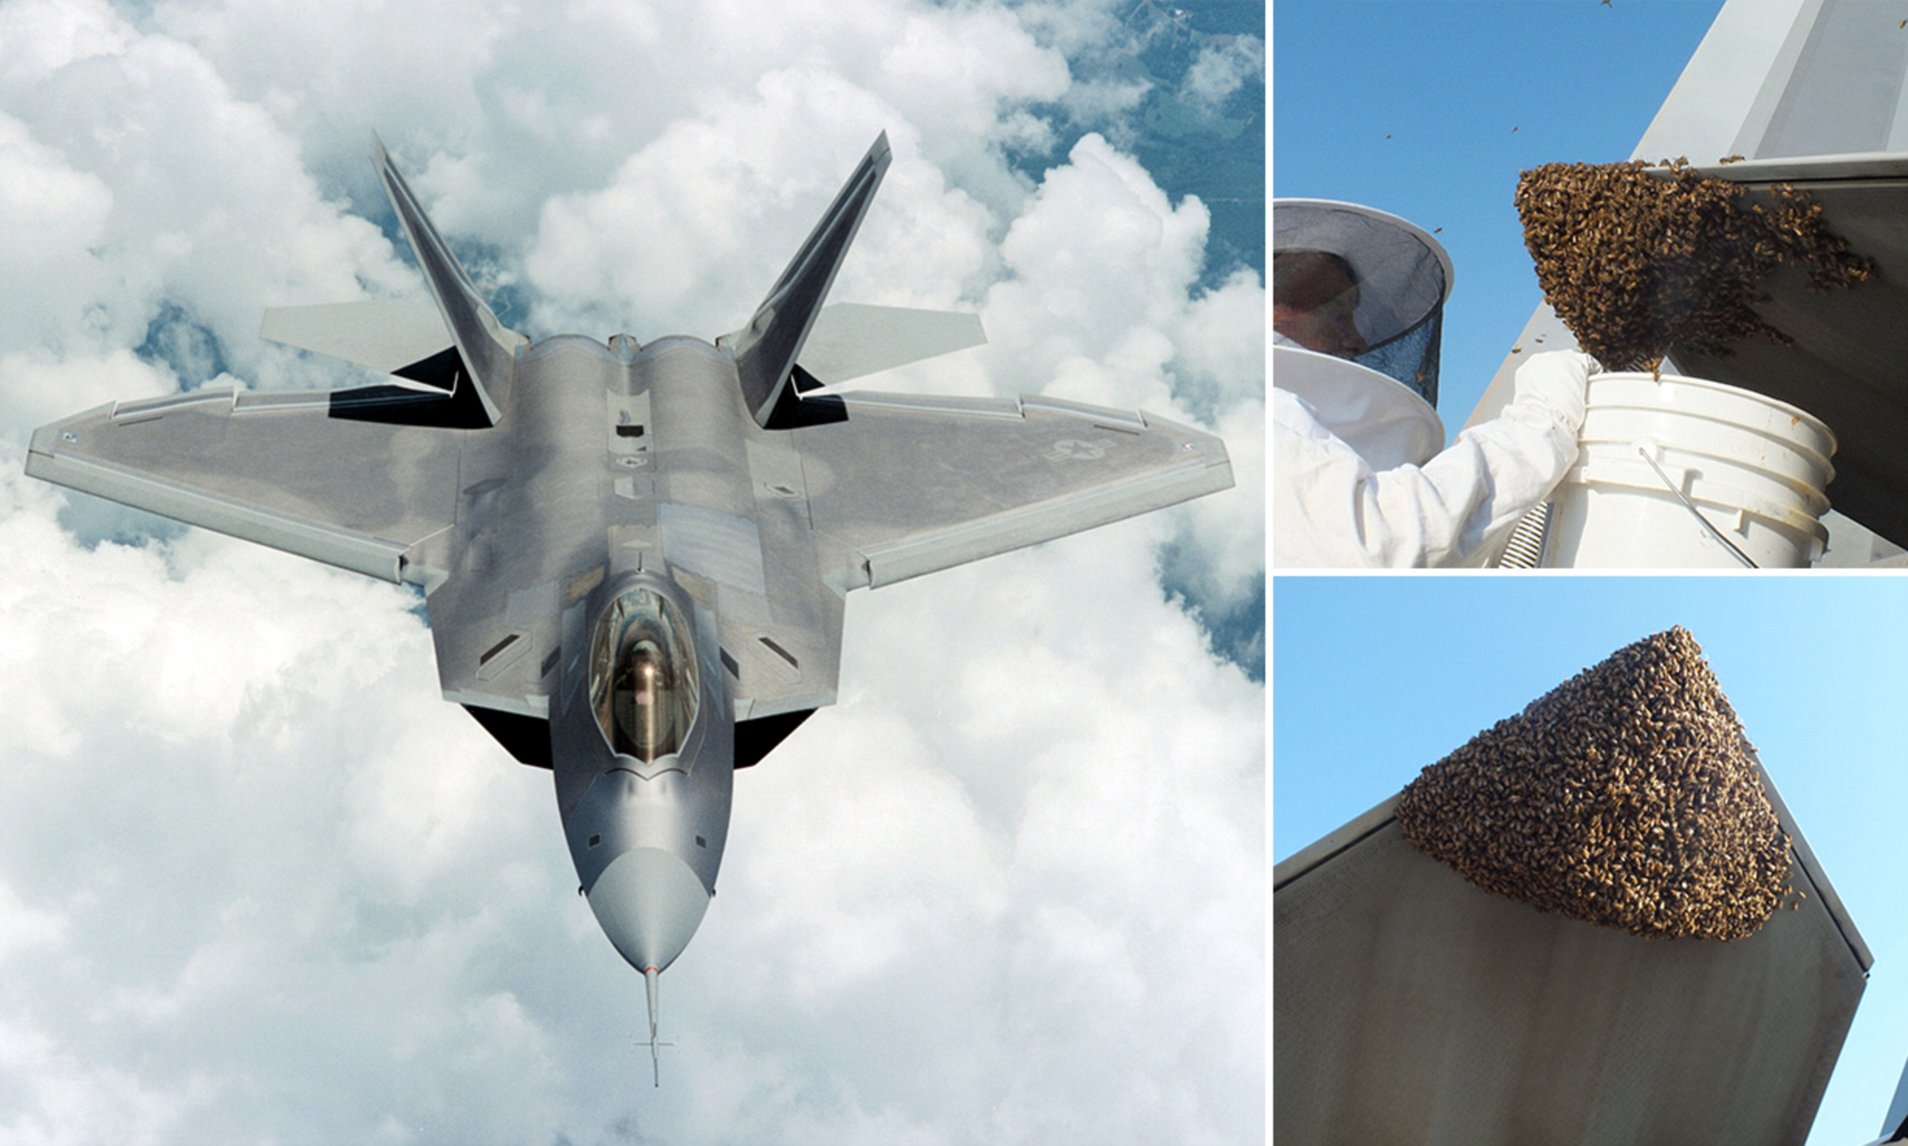 'Vua bầu trời' F-22 Raptor bị đàn ong mật 20.000 con 'ngang ngược chiếm' làm tổ - Ảnh 2.